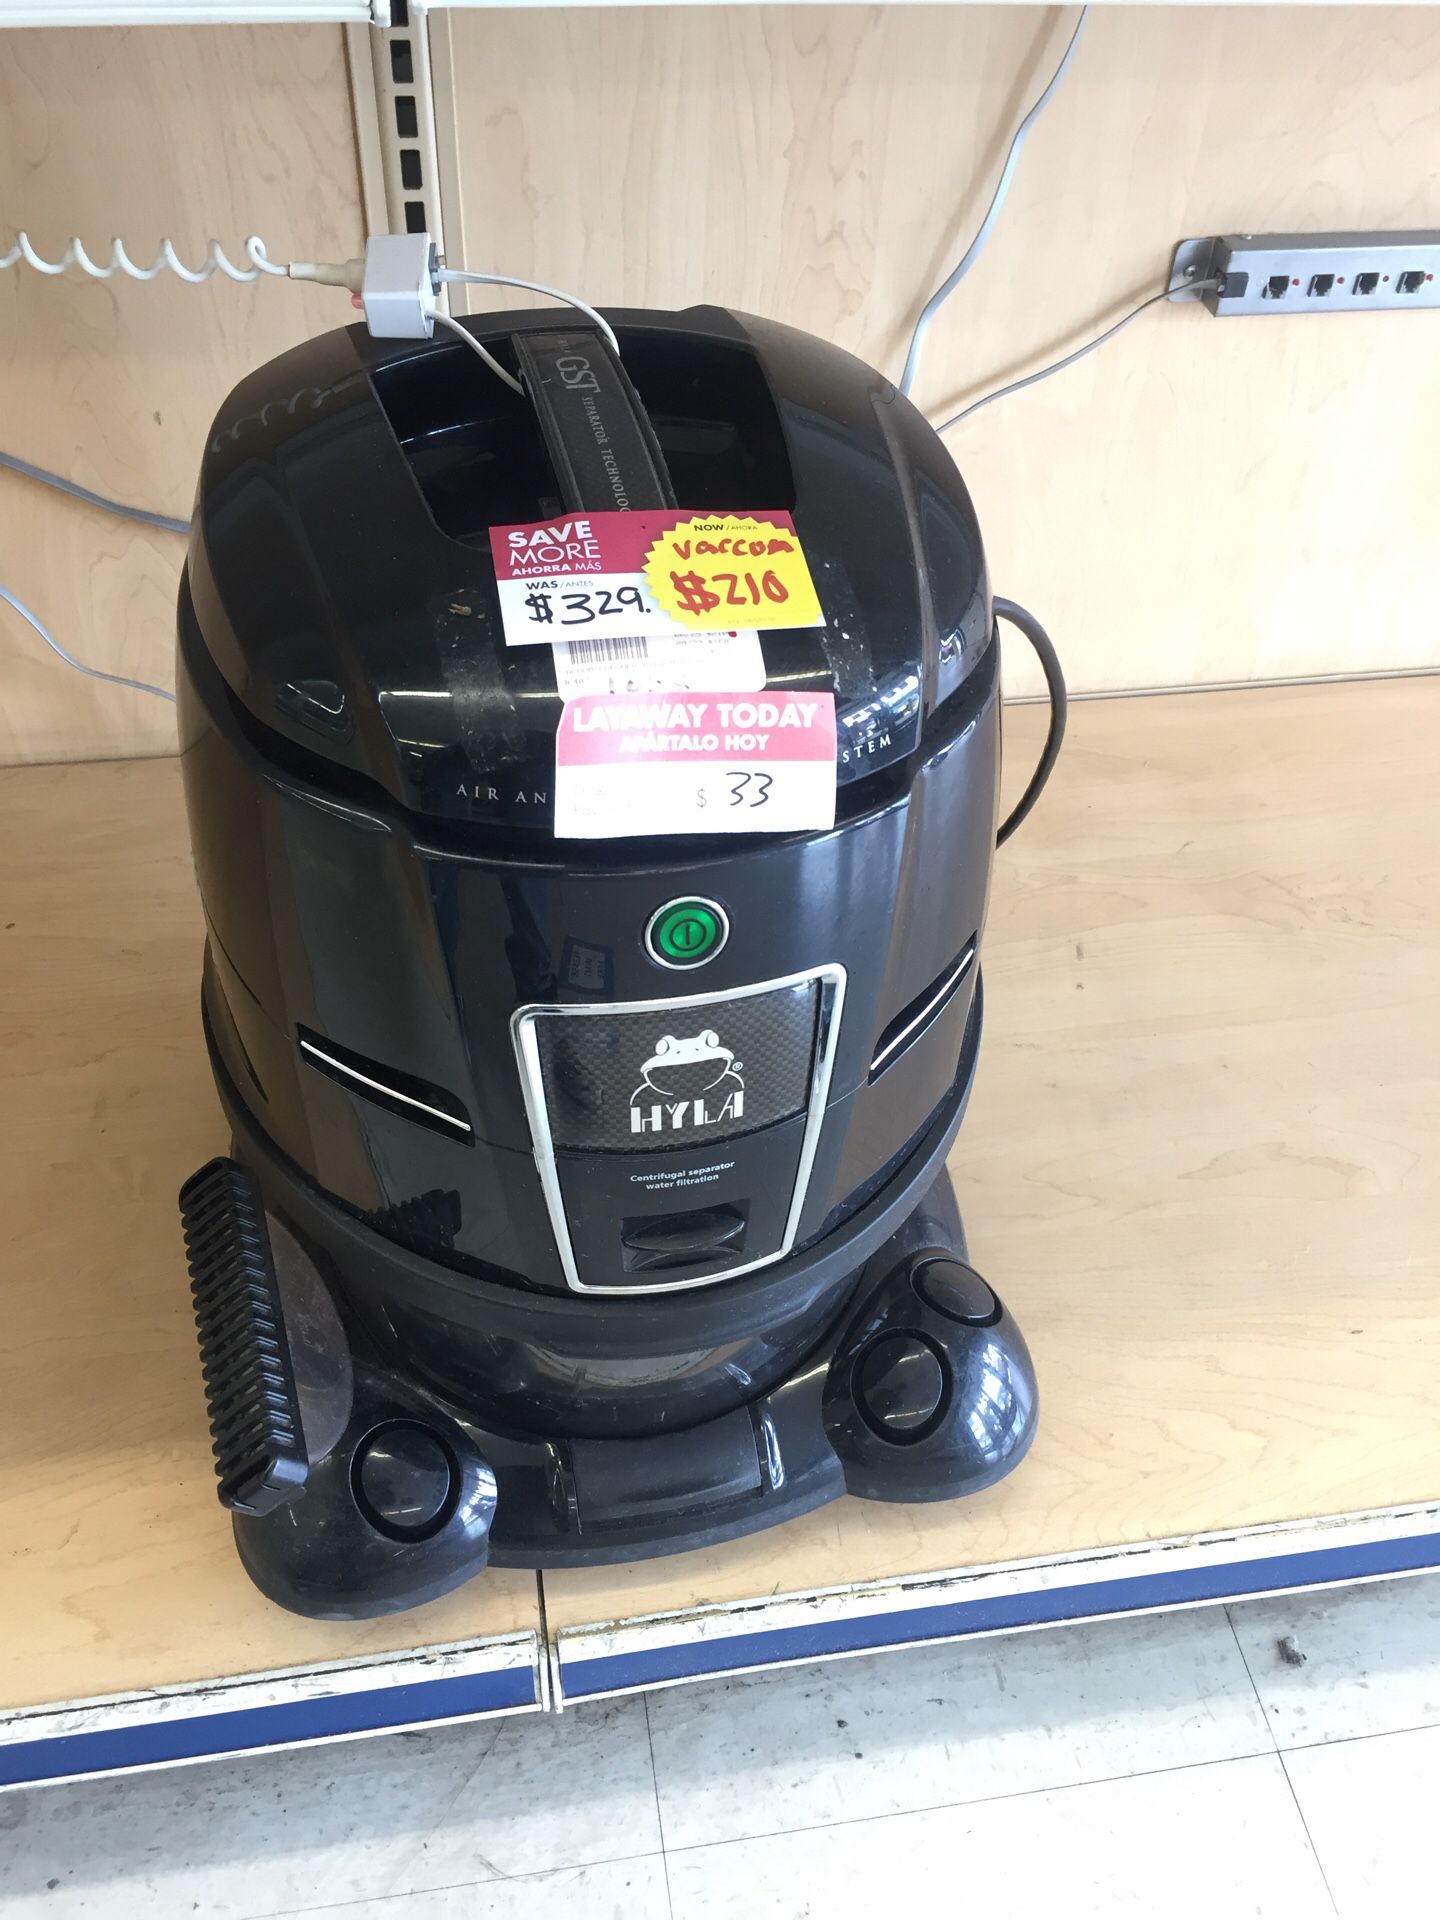 Hyla vacuum cleaner